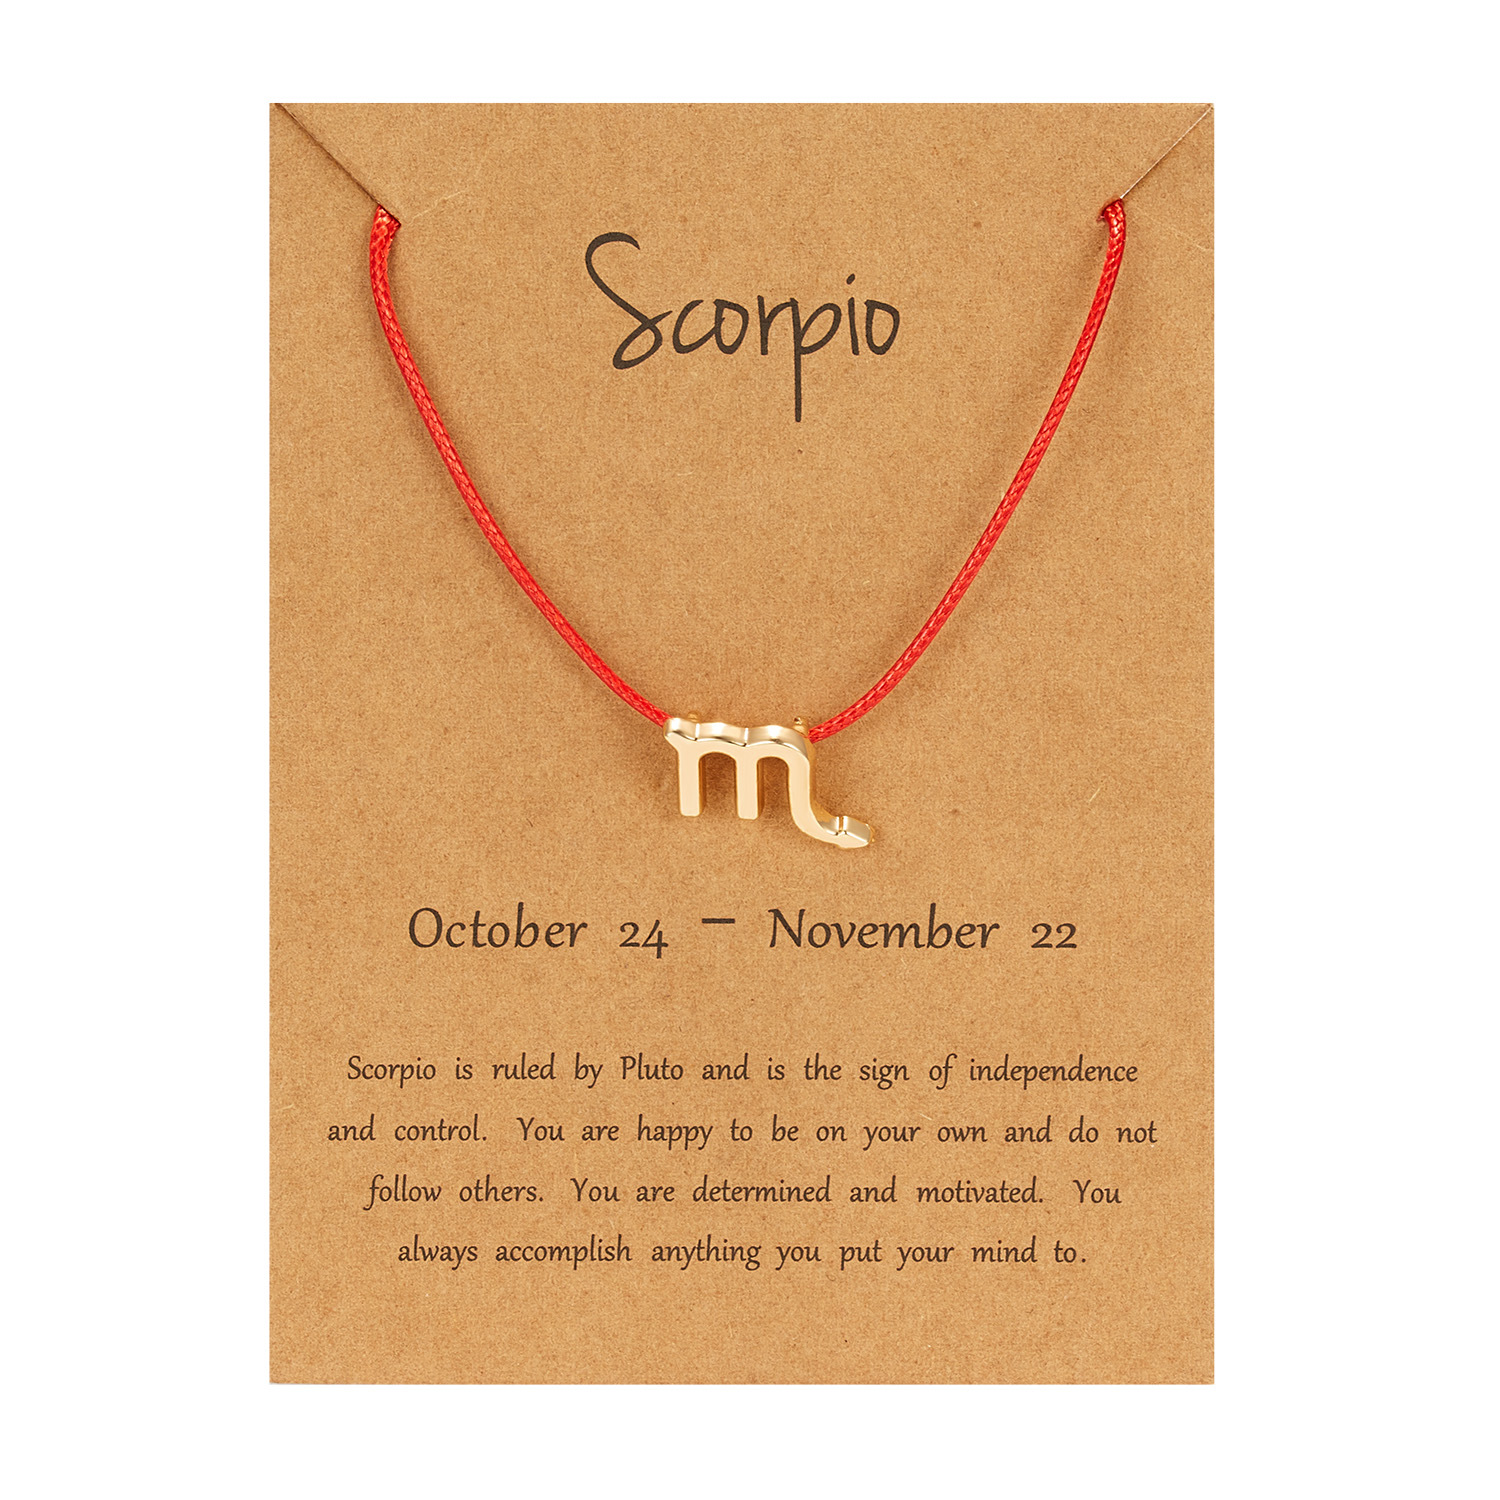 Scorpio (Red Rope)